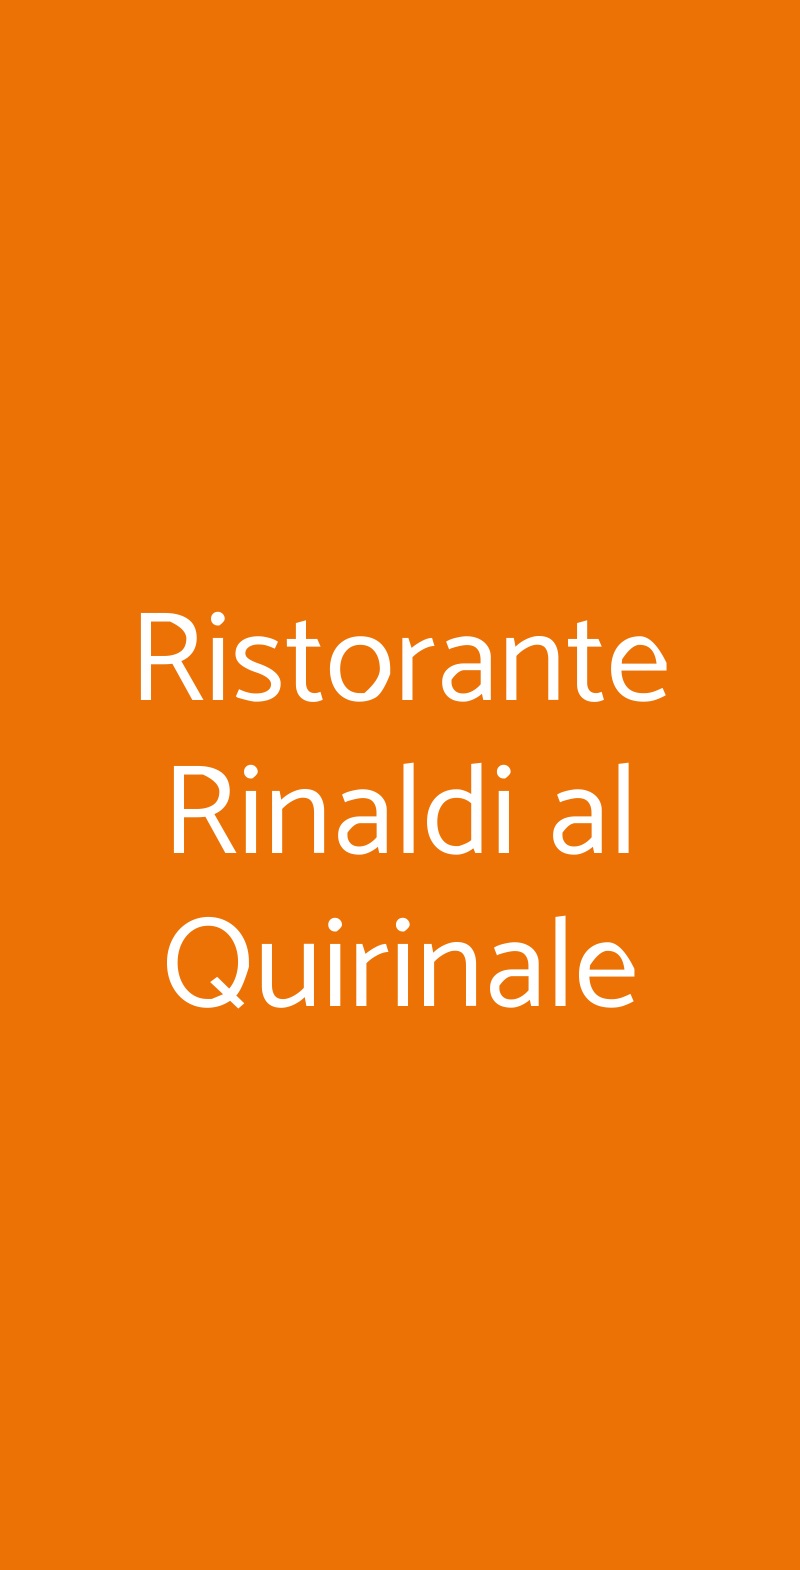 Ristorante Rinaldi al Quirinale Roma menù 1 pagina